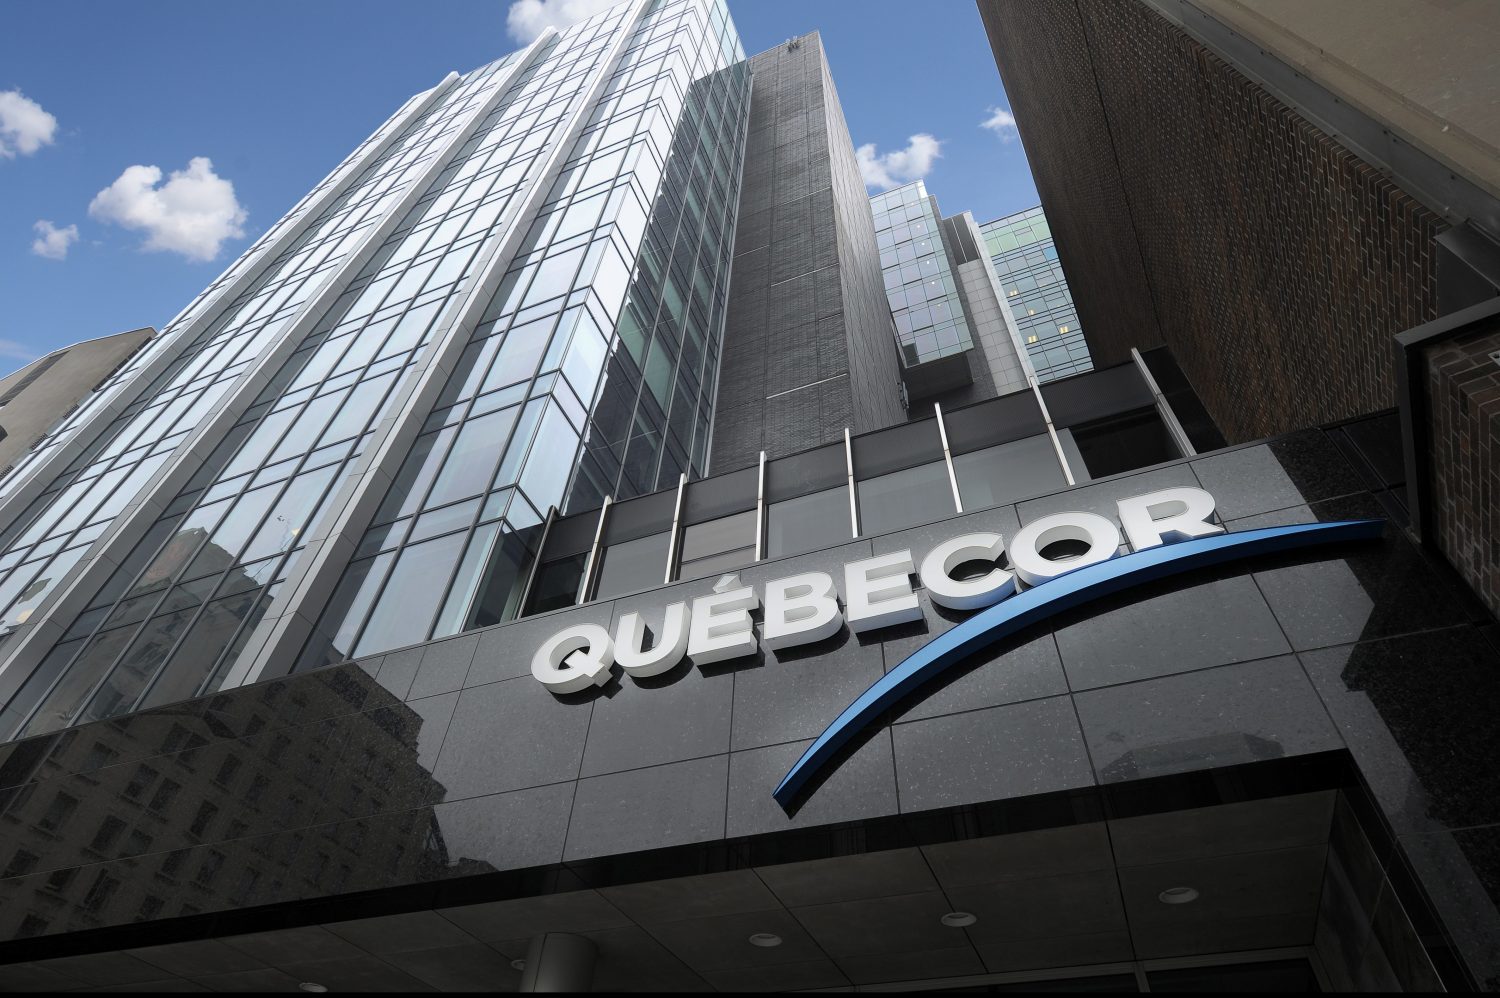 Exterior or Quebecor building